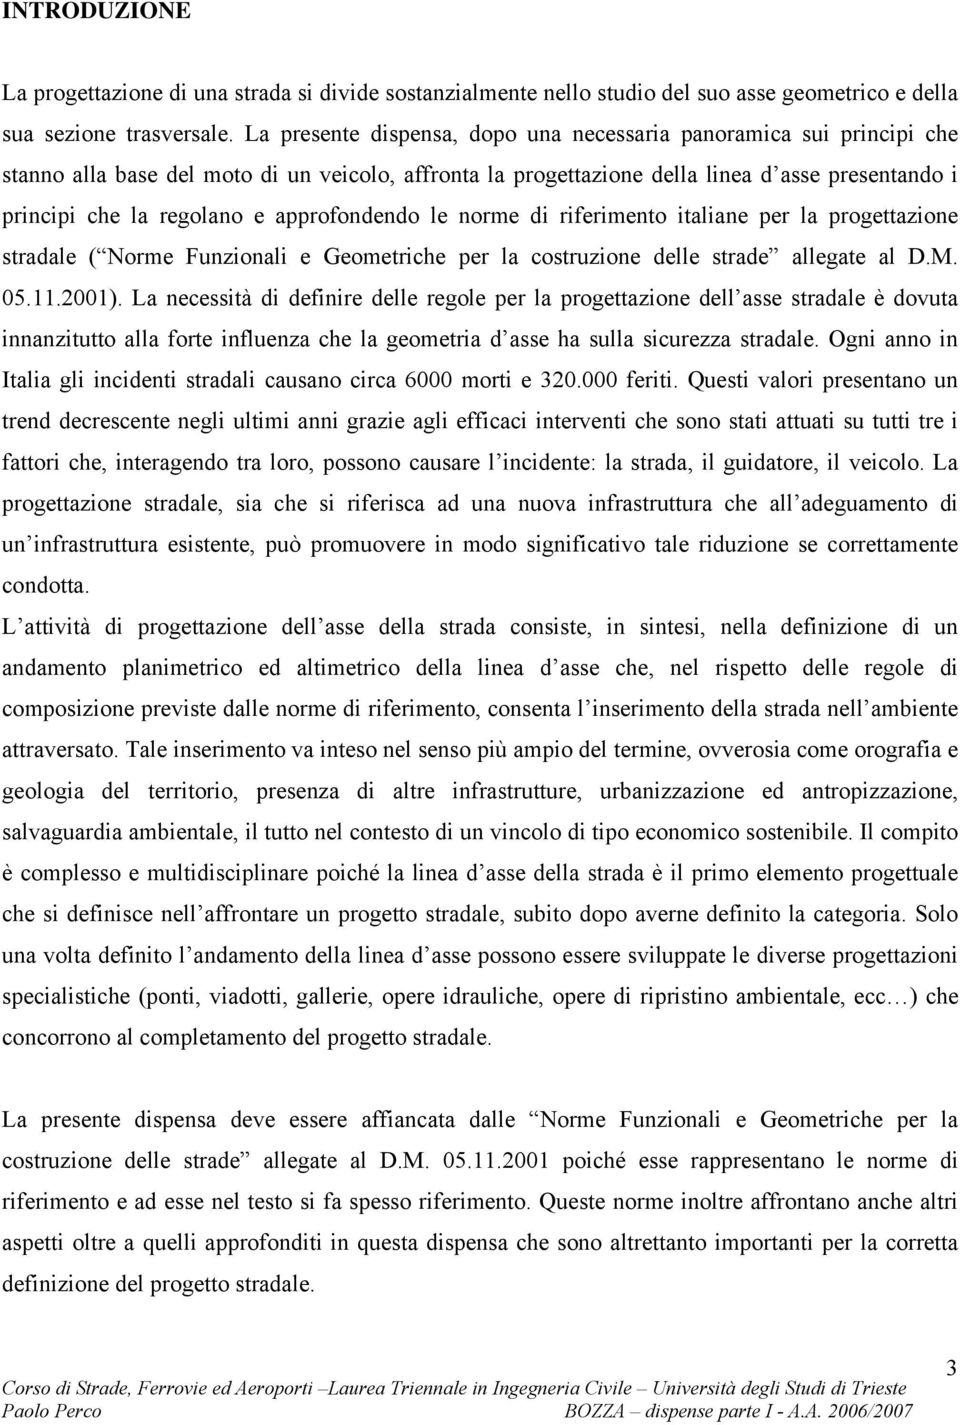 approfondendo le norme di riferimento italiane per la progettazione stradale ( Norme Funzionali e Geometriche per la costruzione delle strade allegate al D.M. 05..00).